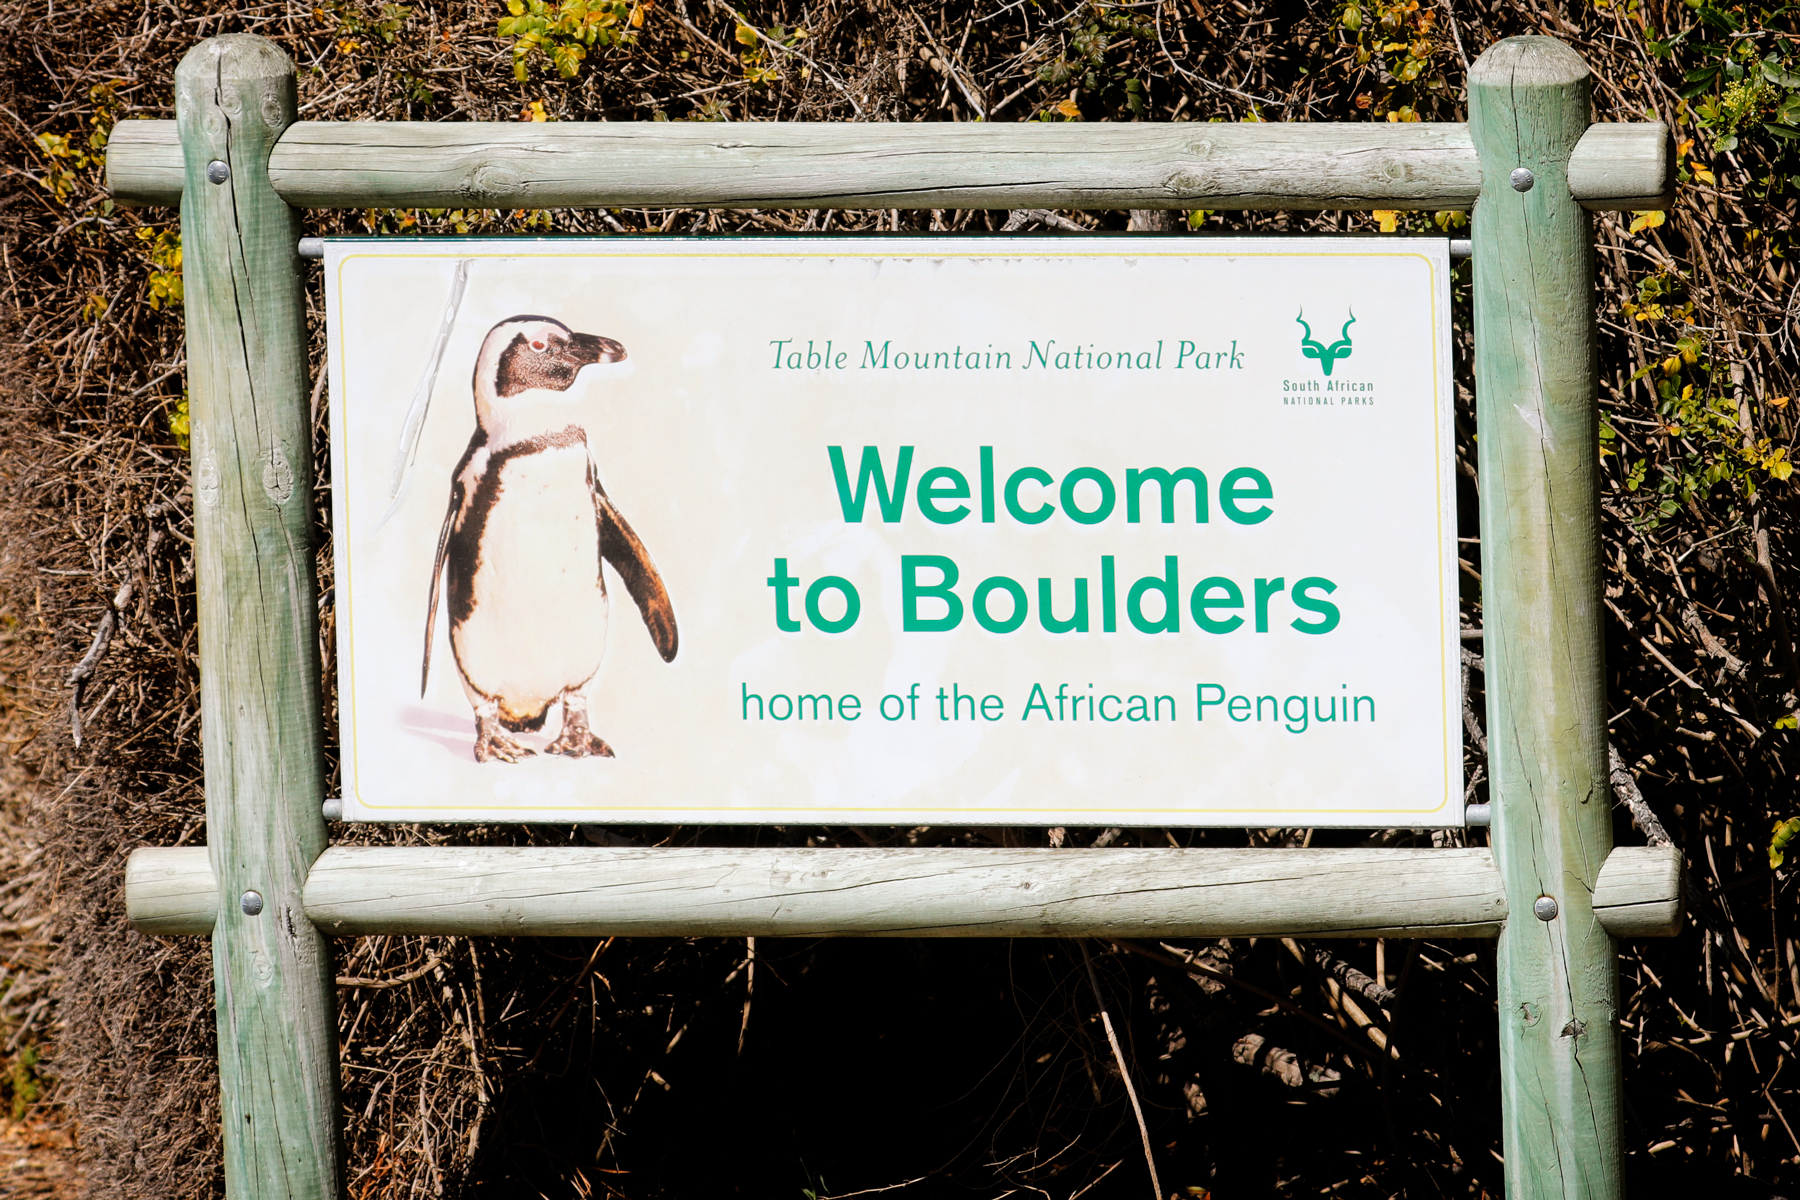 Pinguin-Kolonie Boulders